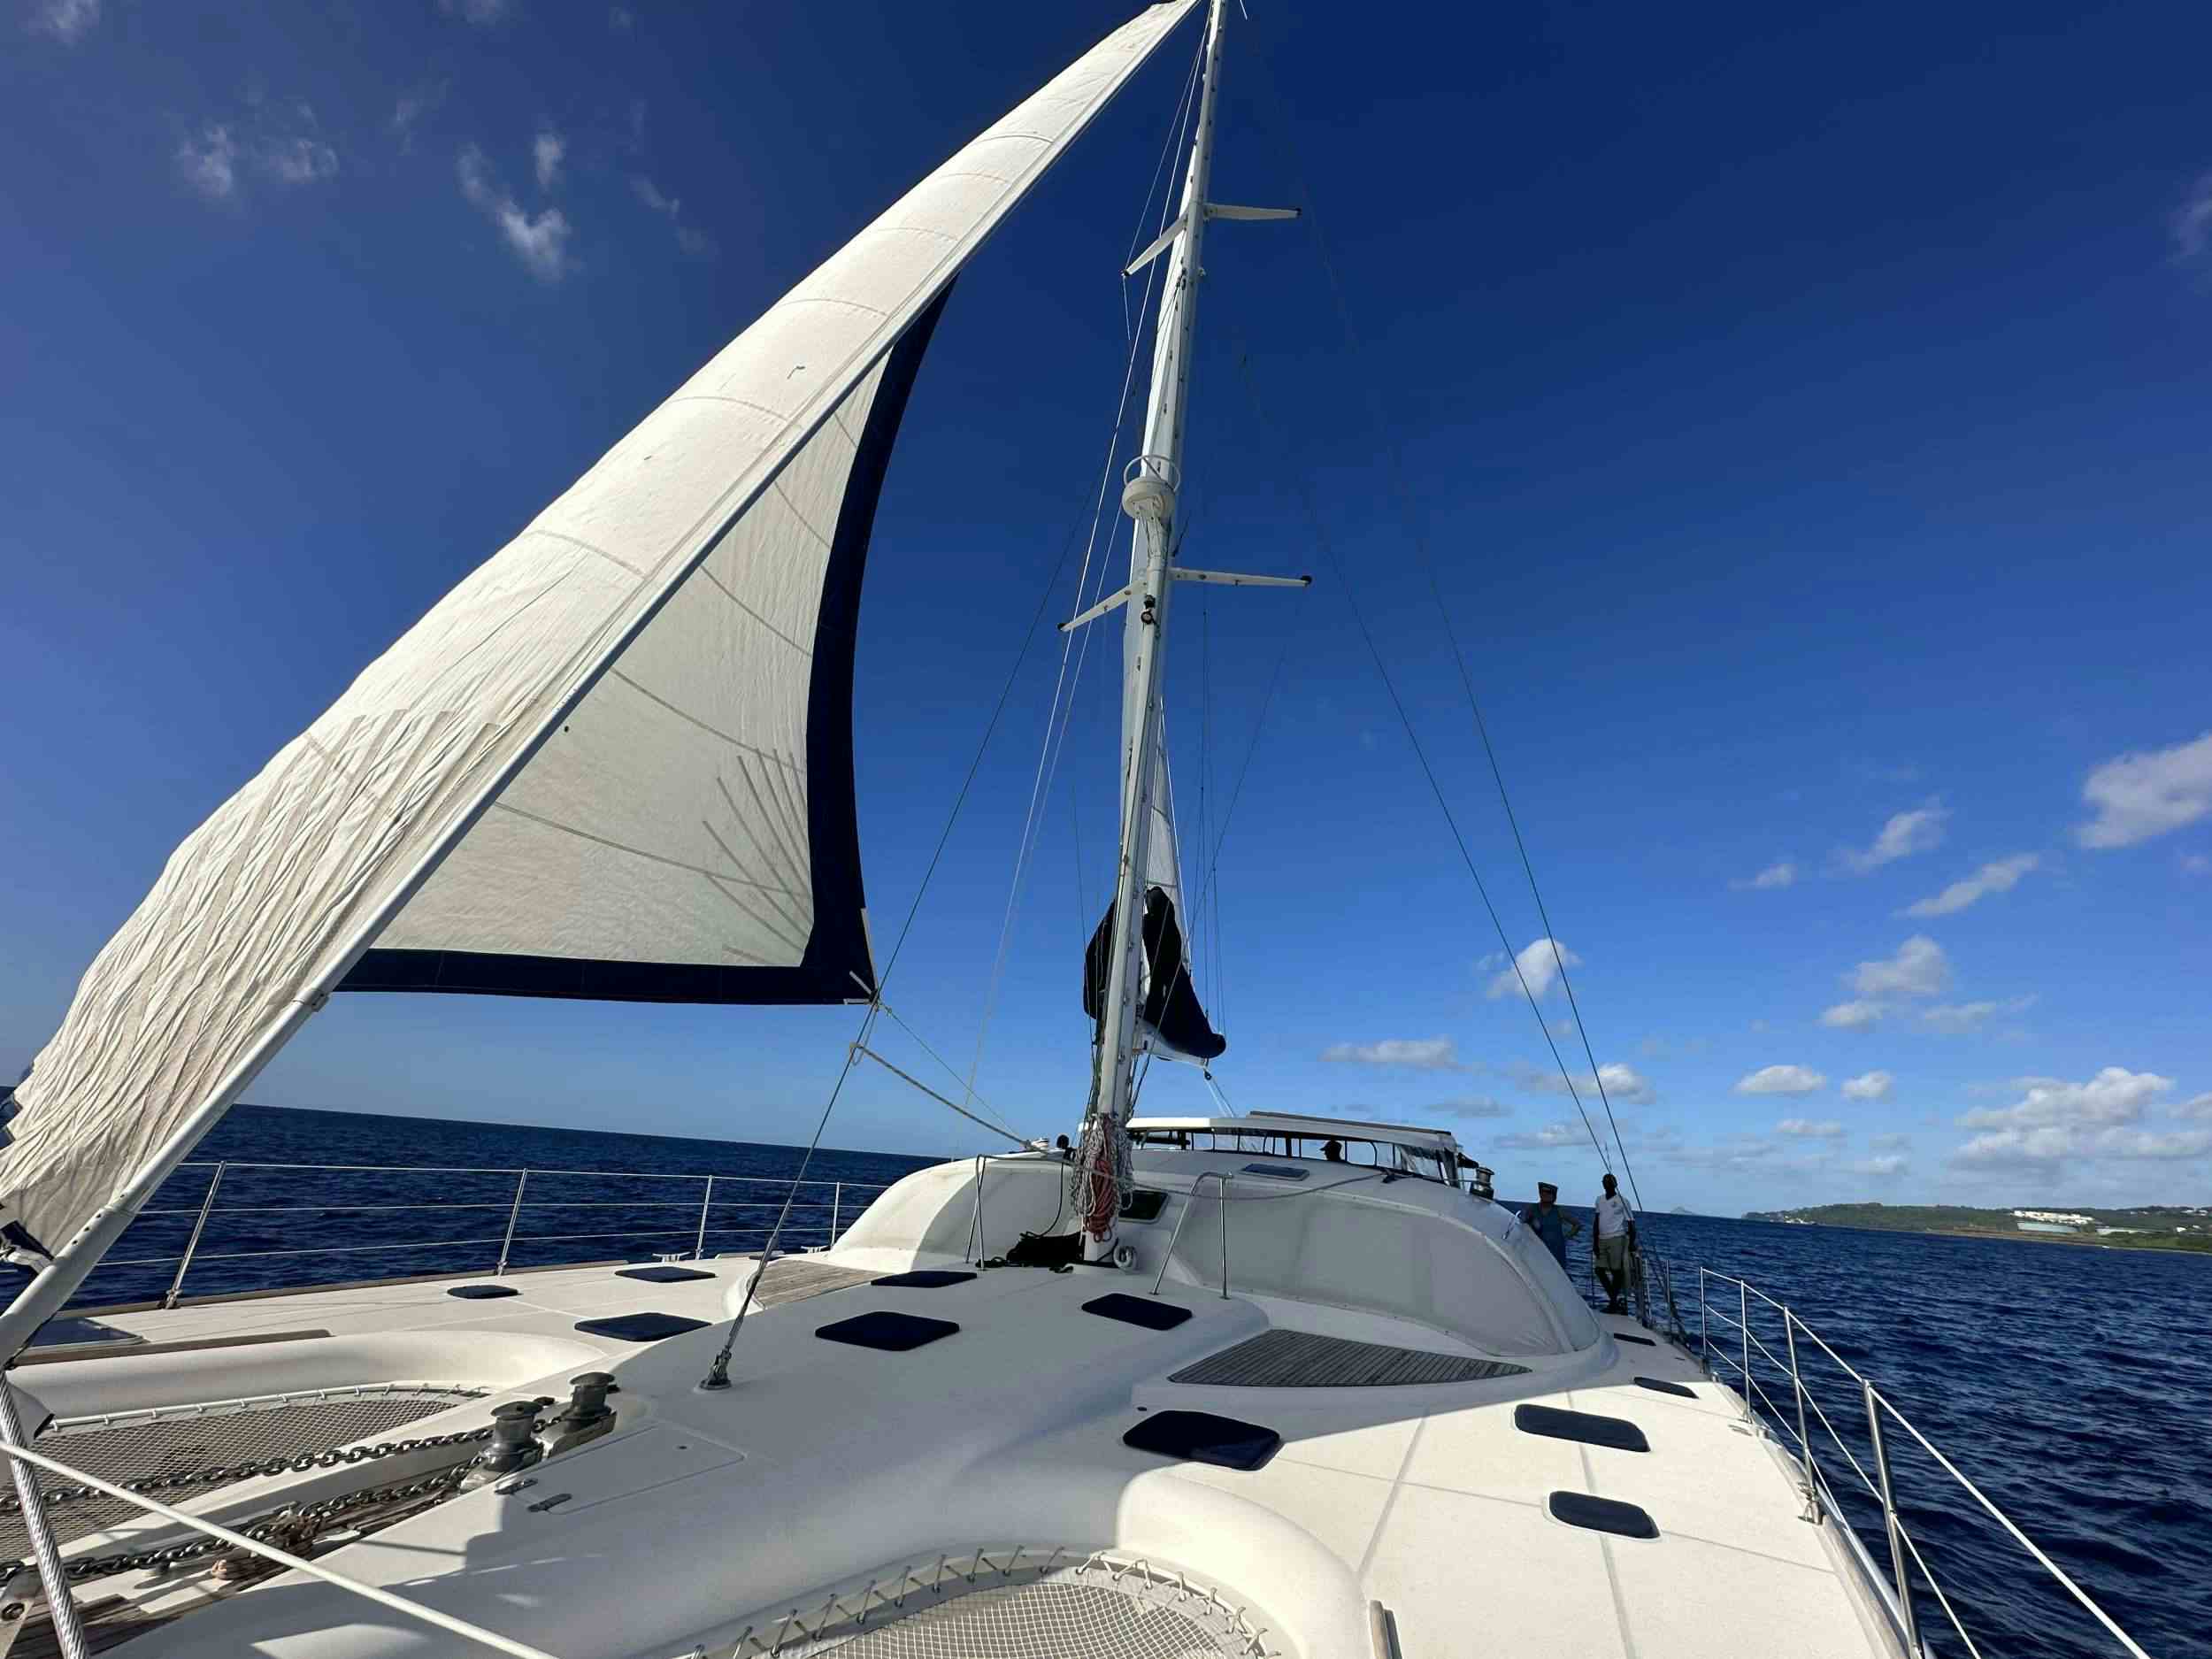 Lady Marigot - Yacht Charter St Maarten & Boat hire in Caribbean 1